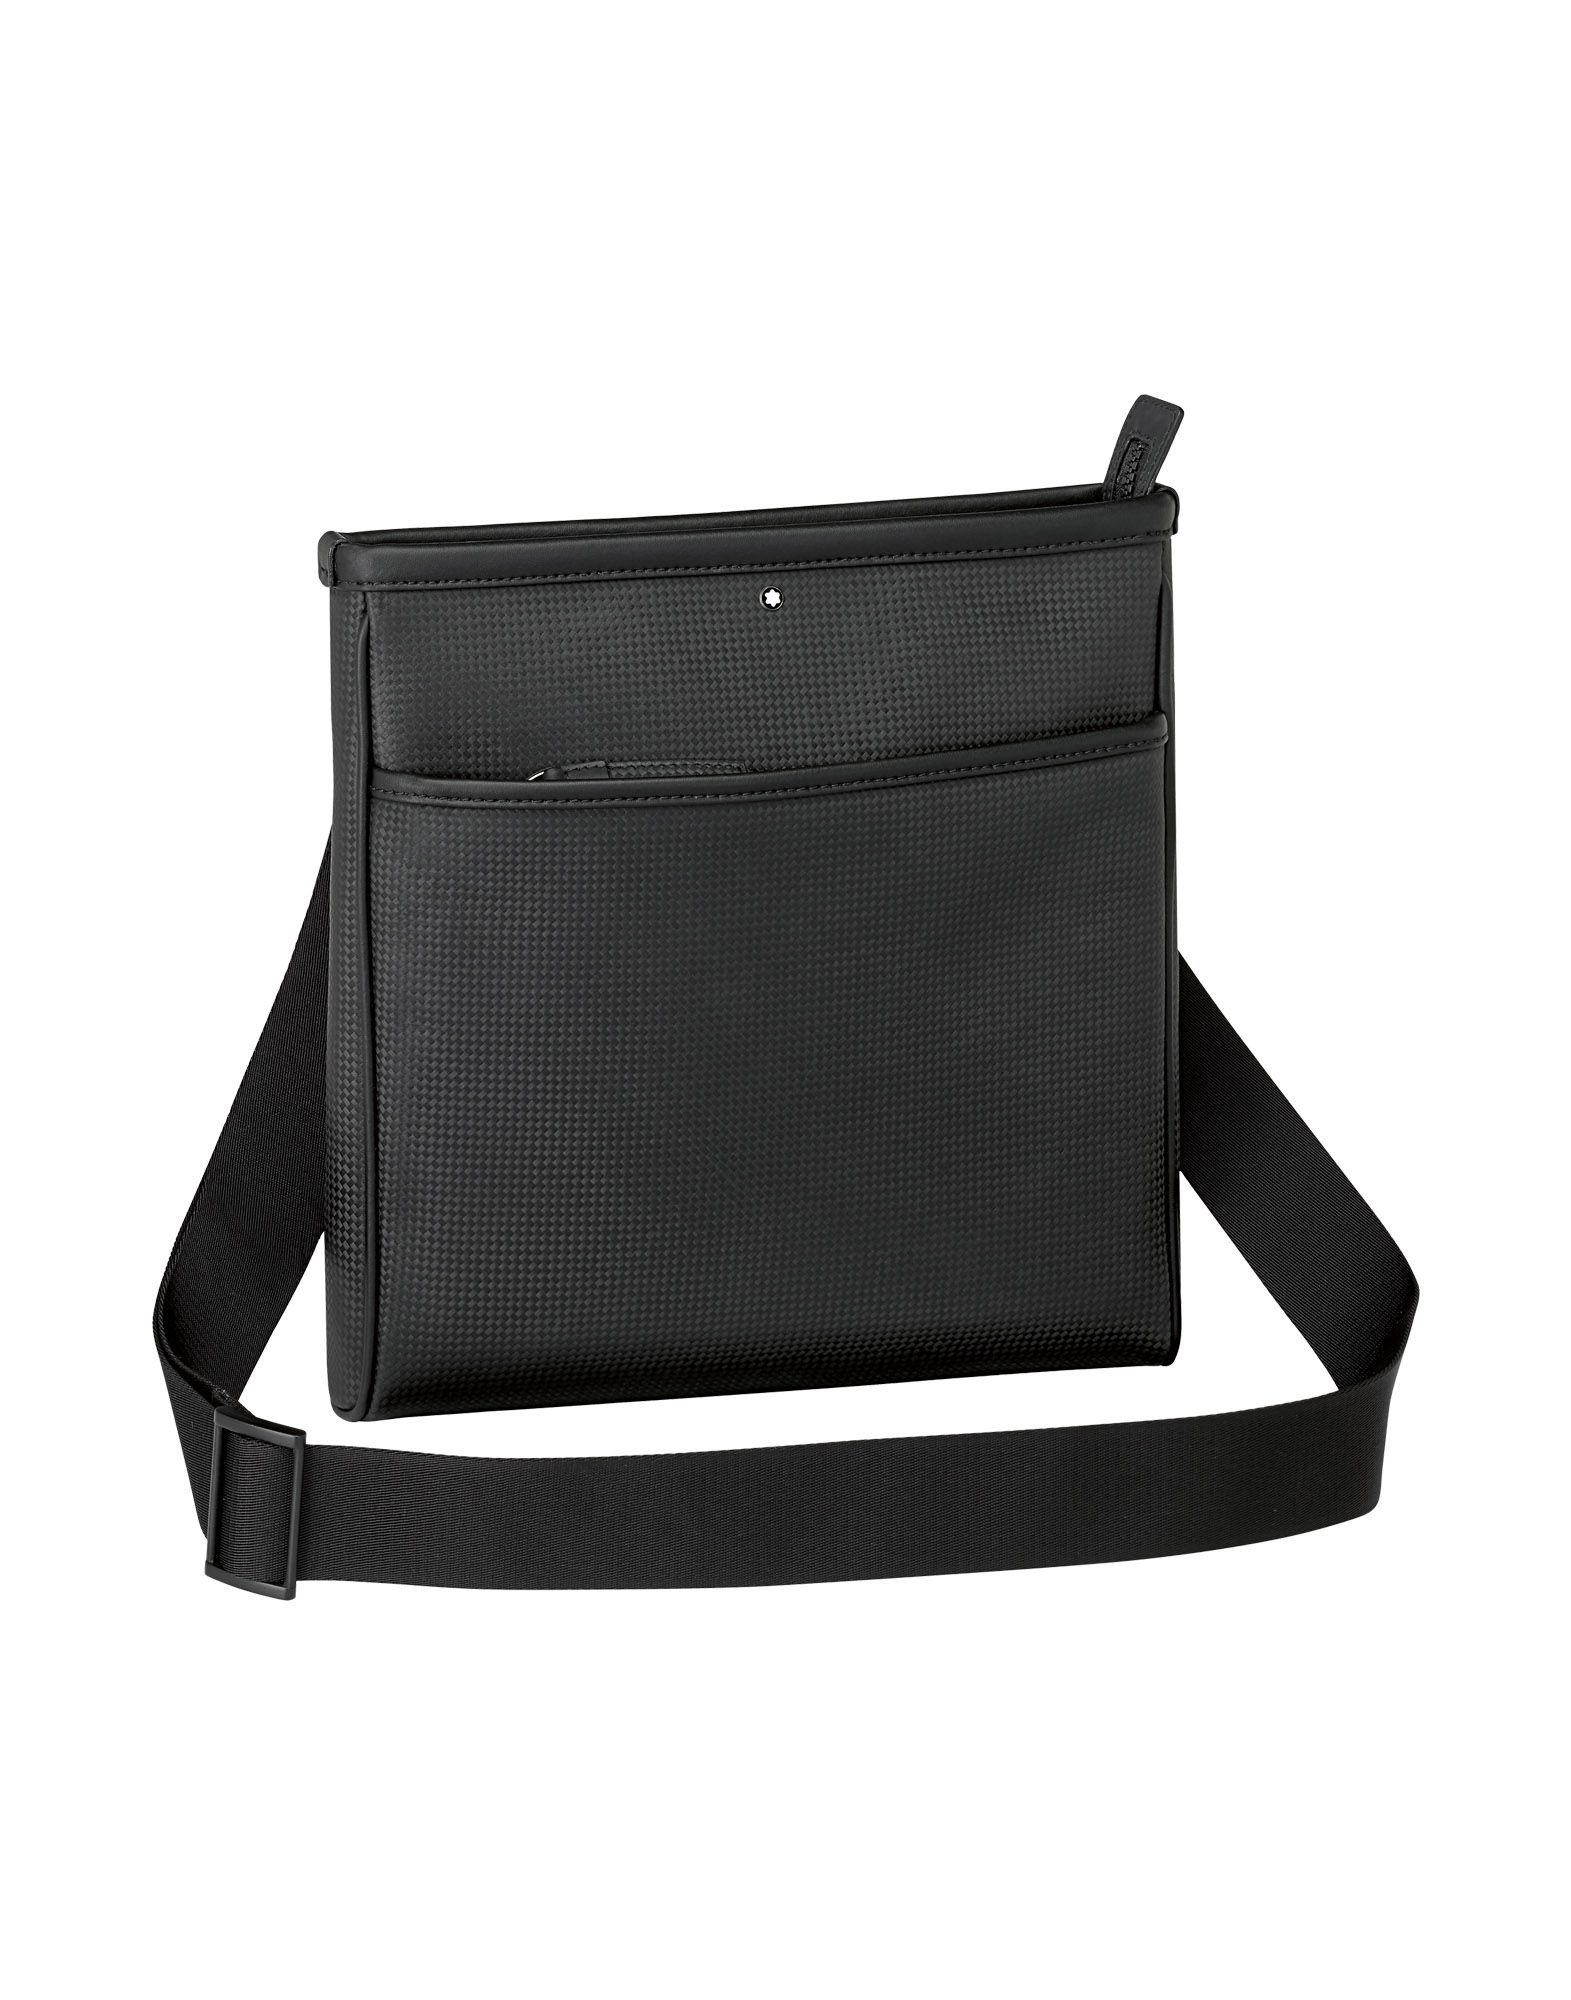 《送料無料》MONTBLANC メンズ メッセンジャーバッグ ブラック 革 Extreme envelope bag